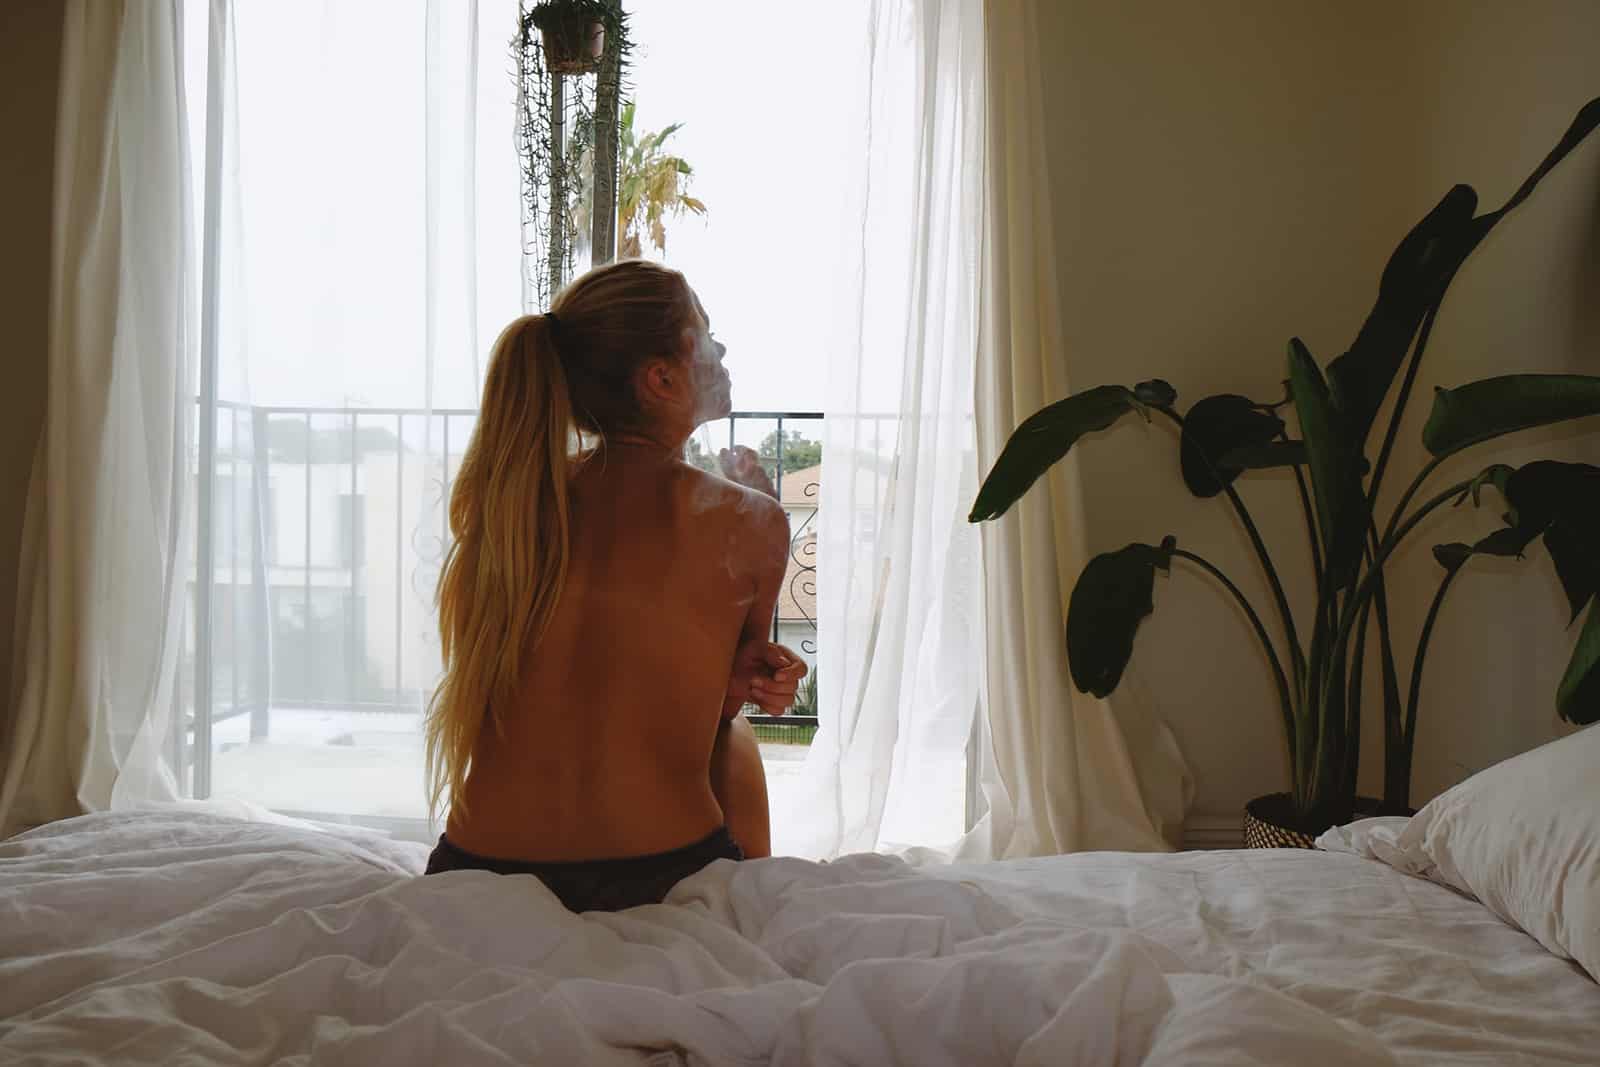 eine toplesse Frau, die auf der Bettkante sitzt und nachdenkt